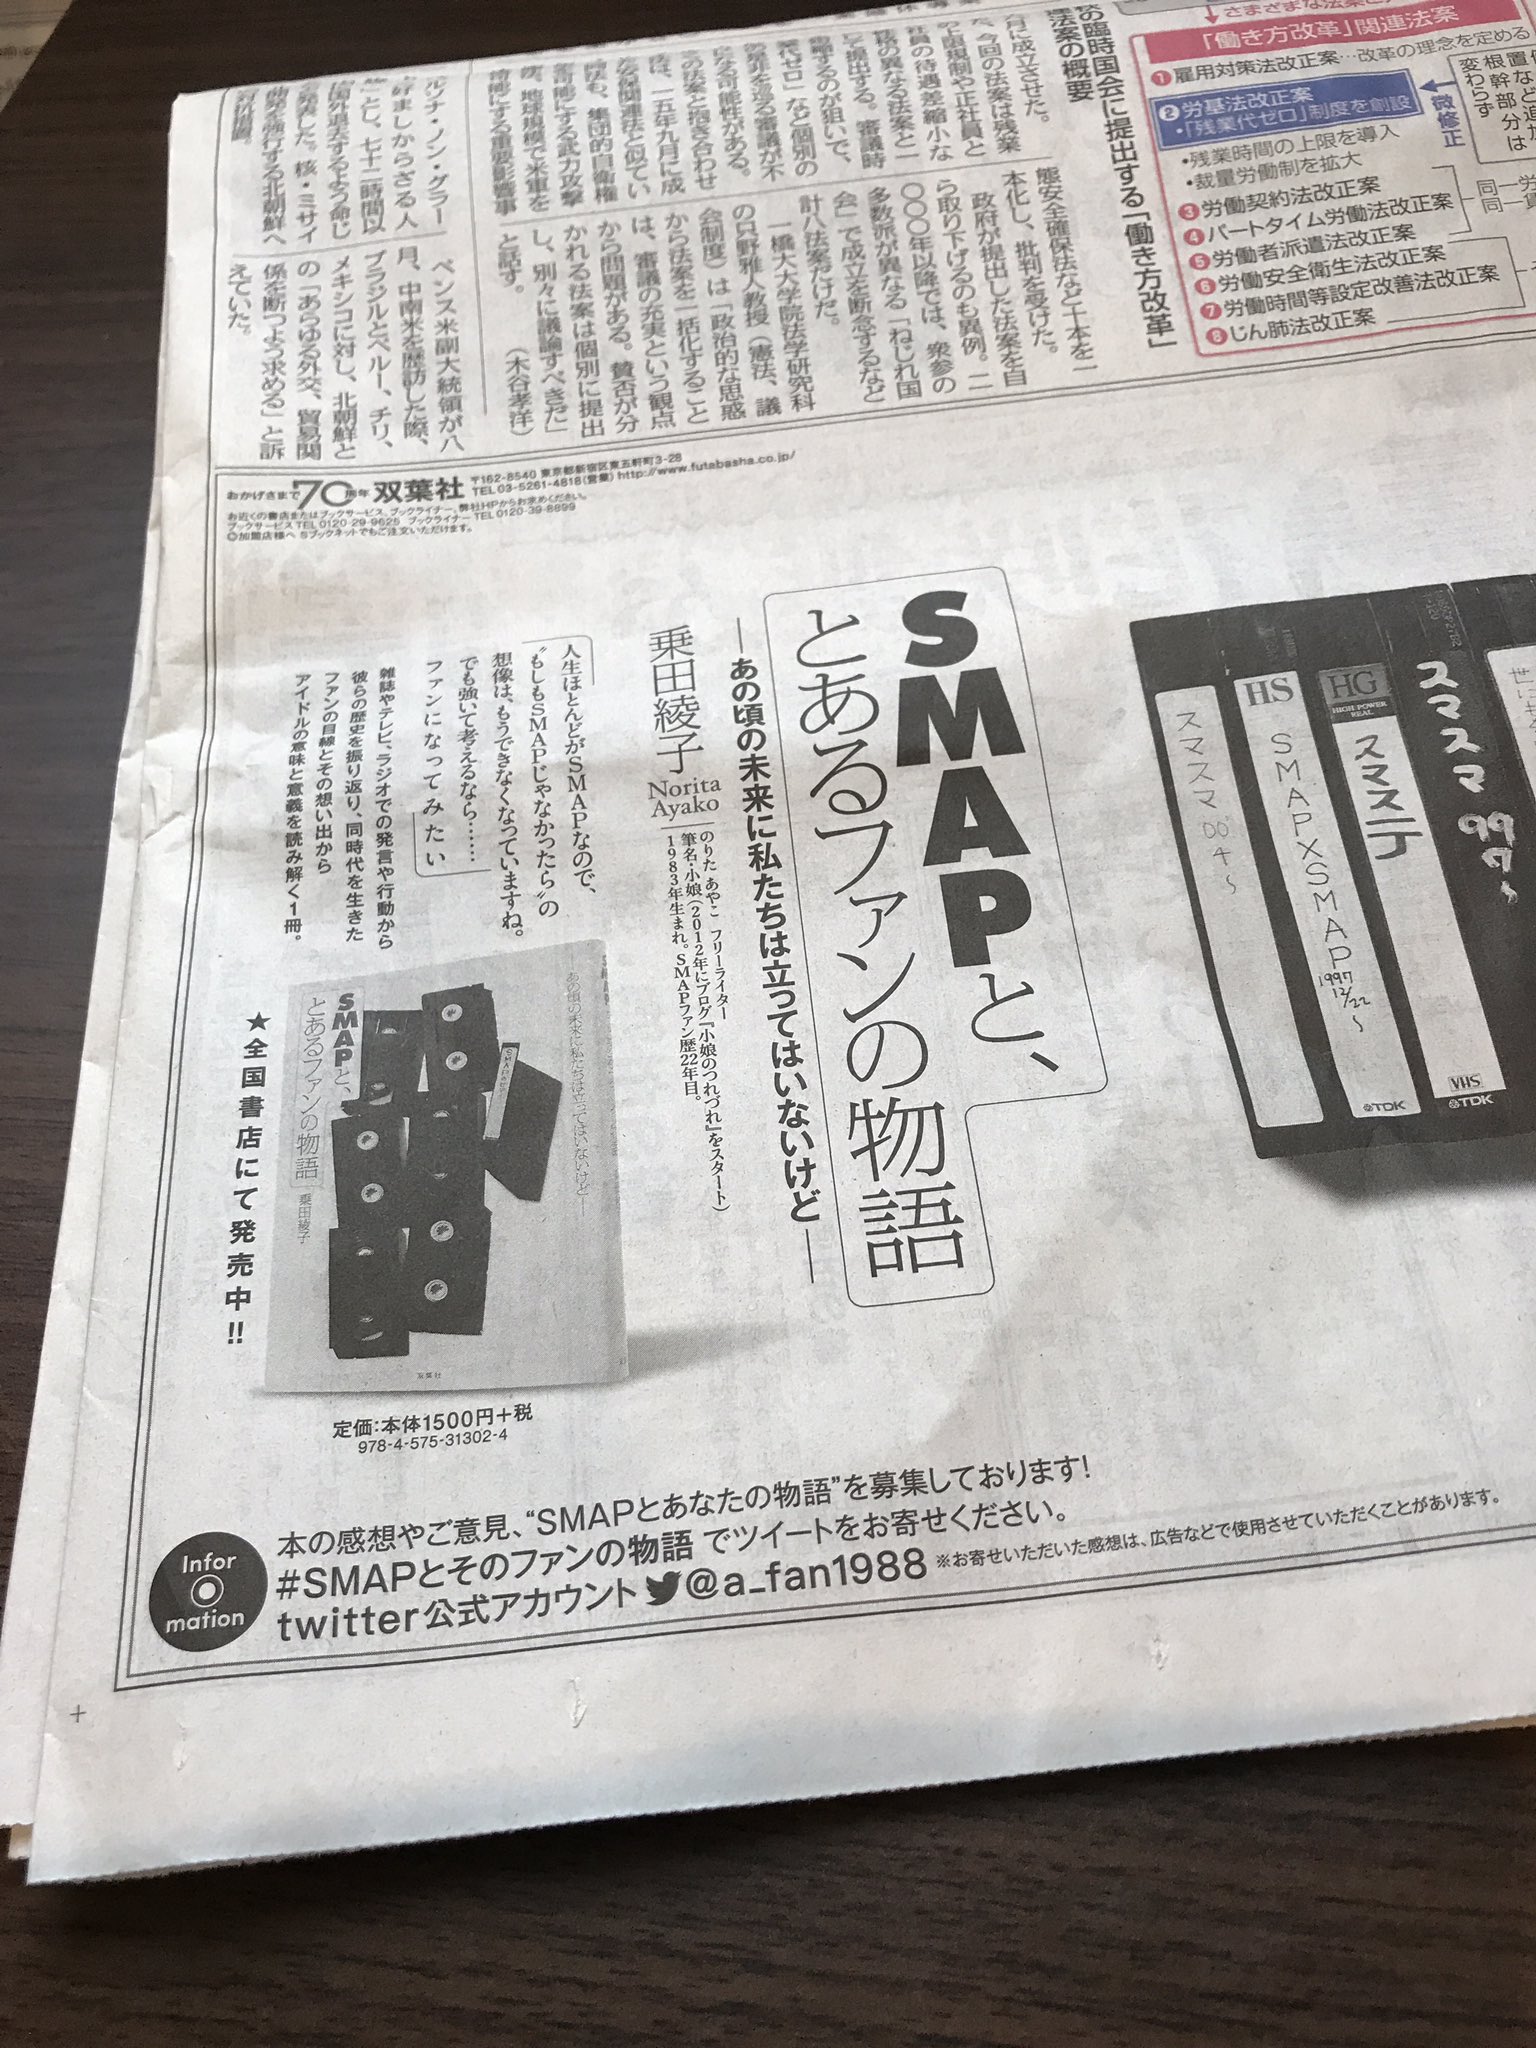 乗田綾子 小娘 على تويتر 9 9東京新聞広告 一番大きいキャッチコピーはこの日のために 伝言板のメッセージルールと同じ形で Smapファンの担当さんと考えた文章です 伝言板の沢山の想い溢れるメッセージと一緒に ぜひチェックしていただければ嬉しいです